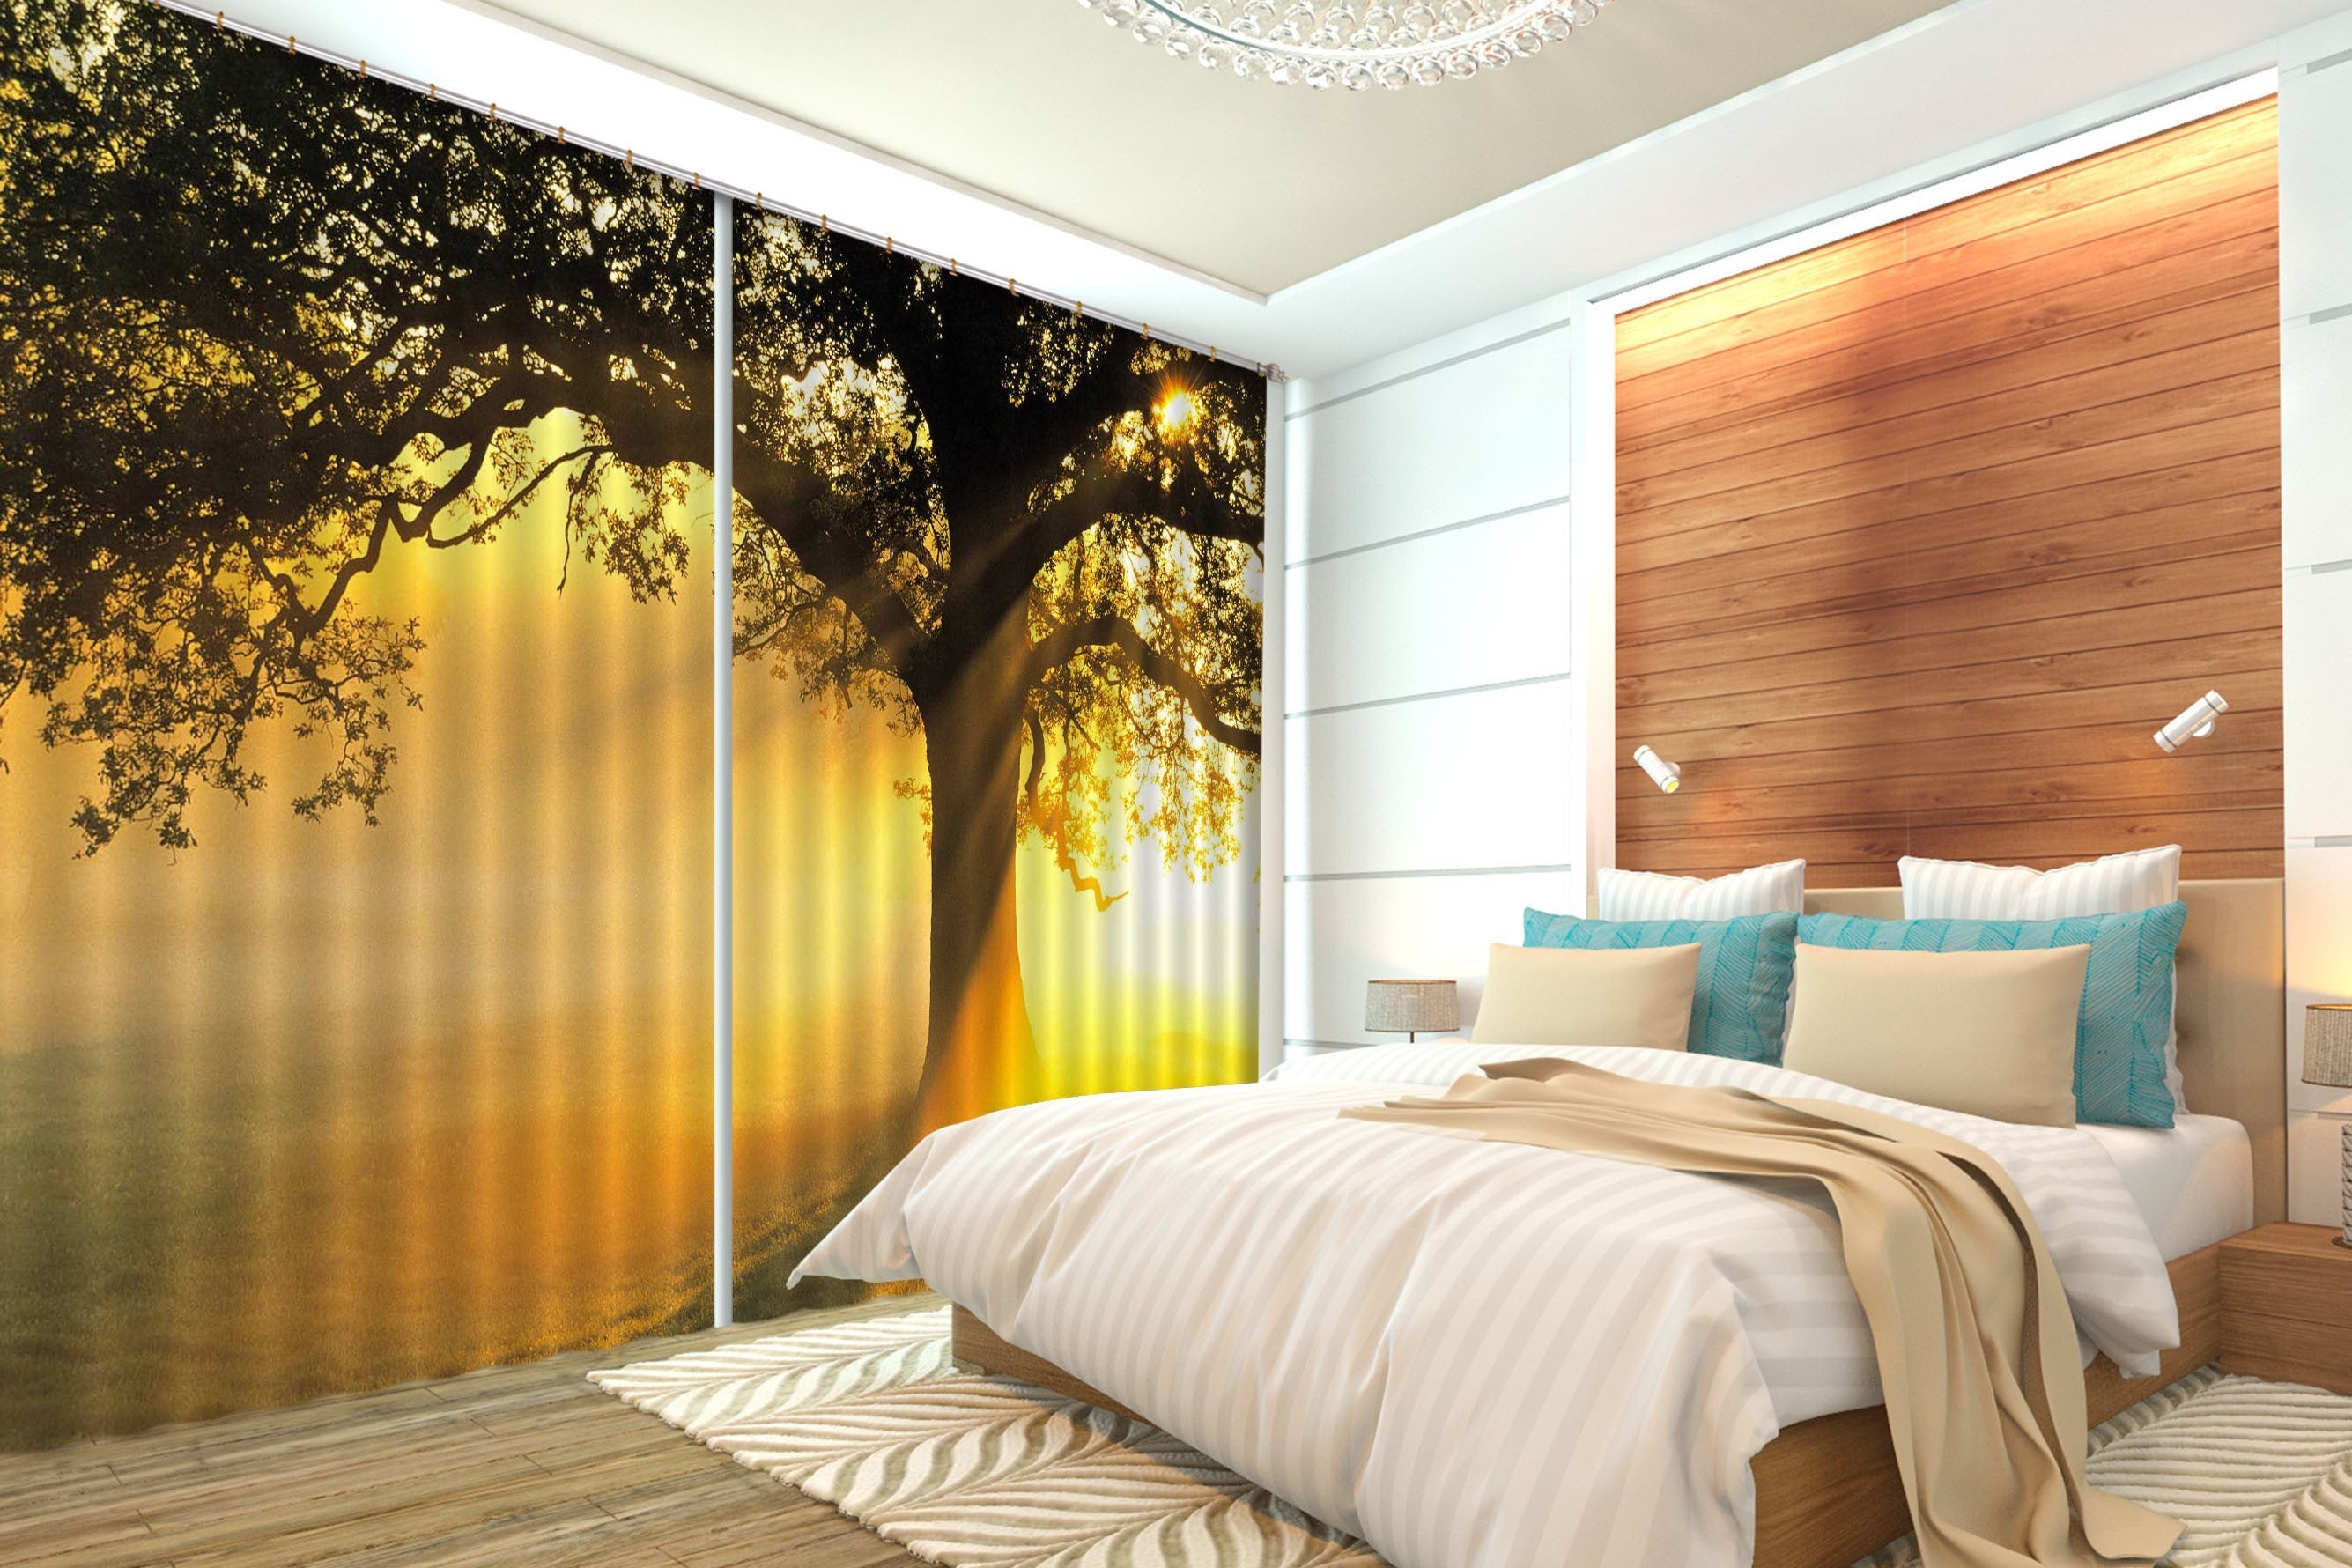 3D Tree Sunshine 312 Curtains Drapes Wallpaper AJ Wallpaper 